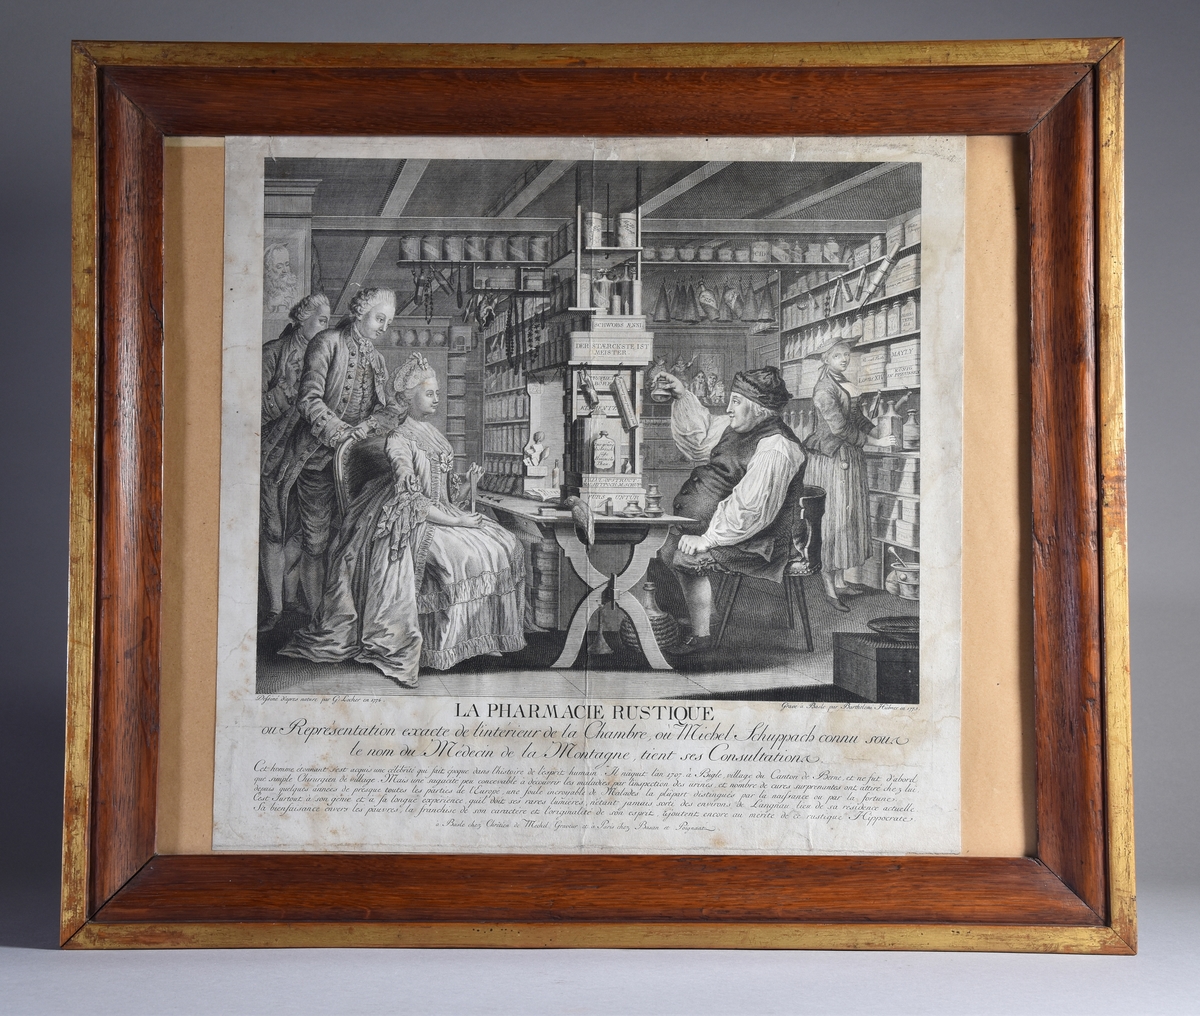 Interiörbild från apotek med apotekare, medhjälpare, kvinnlig kund och två medföljande män. Detaljerad skildring av inredning och redskap.